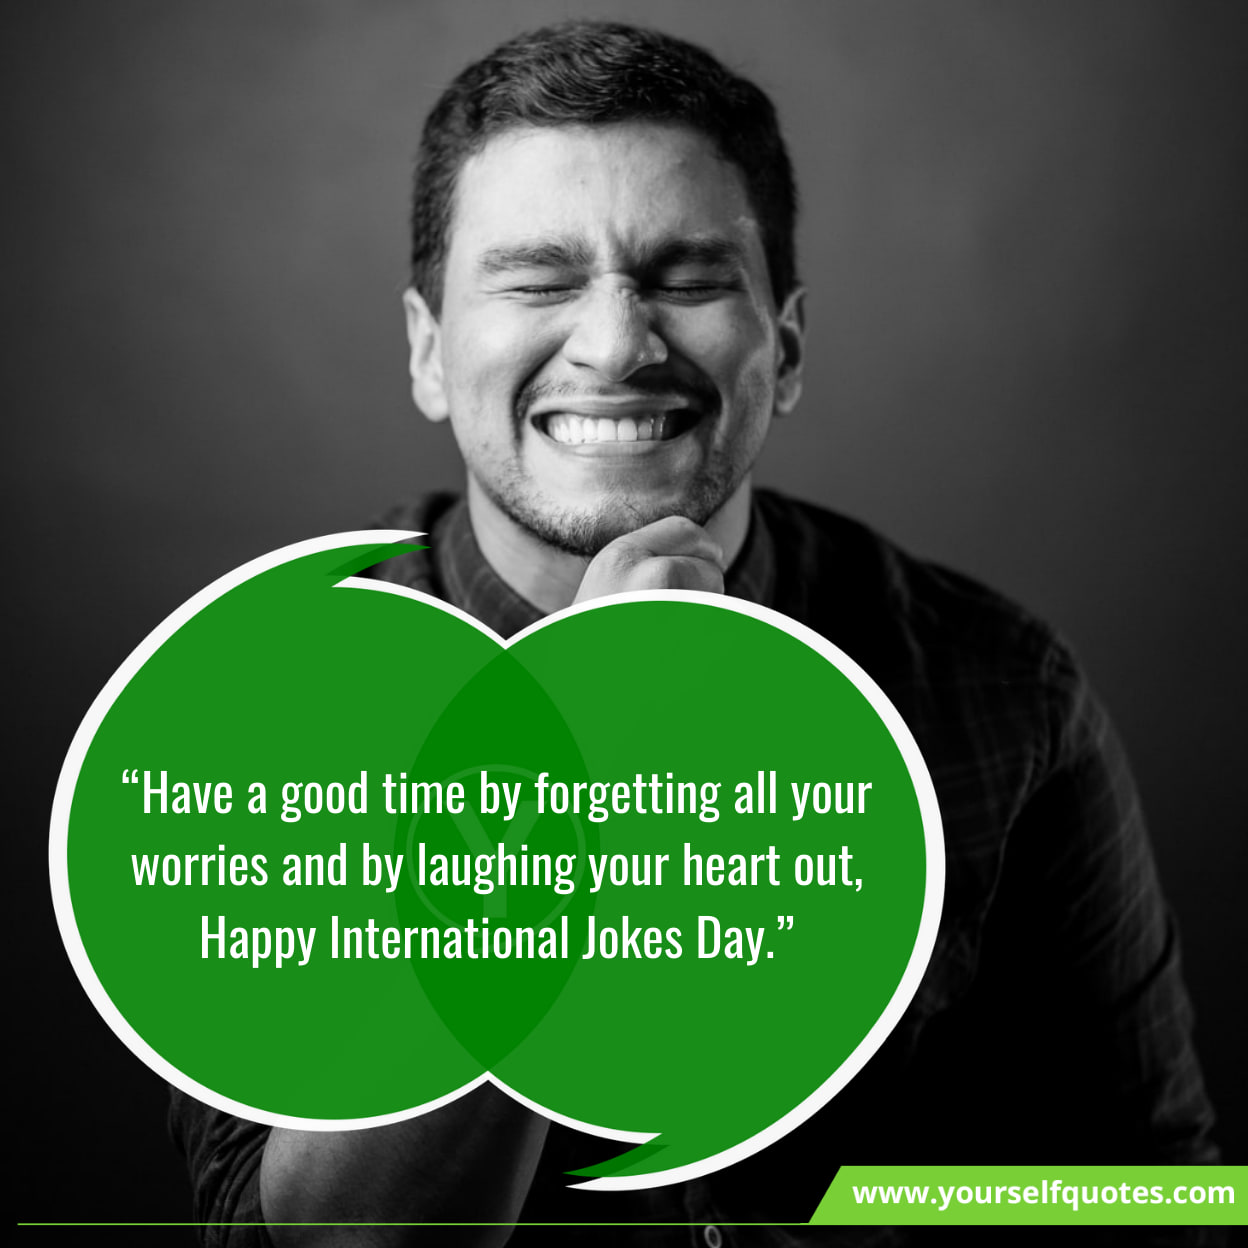 Joke Day Wishes